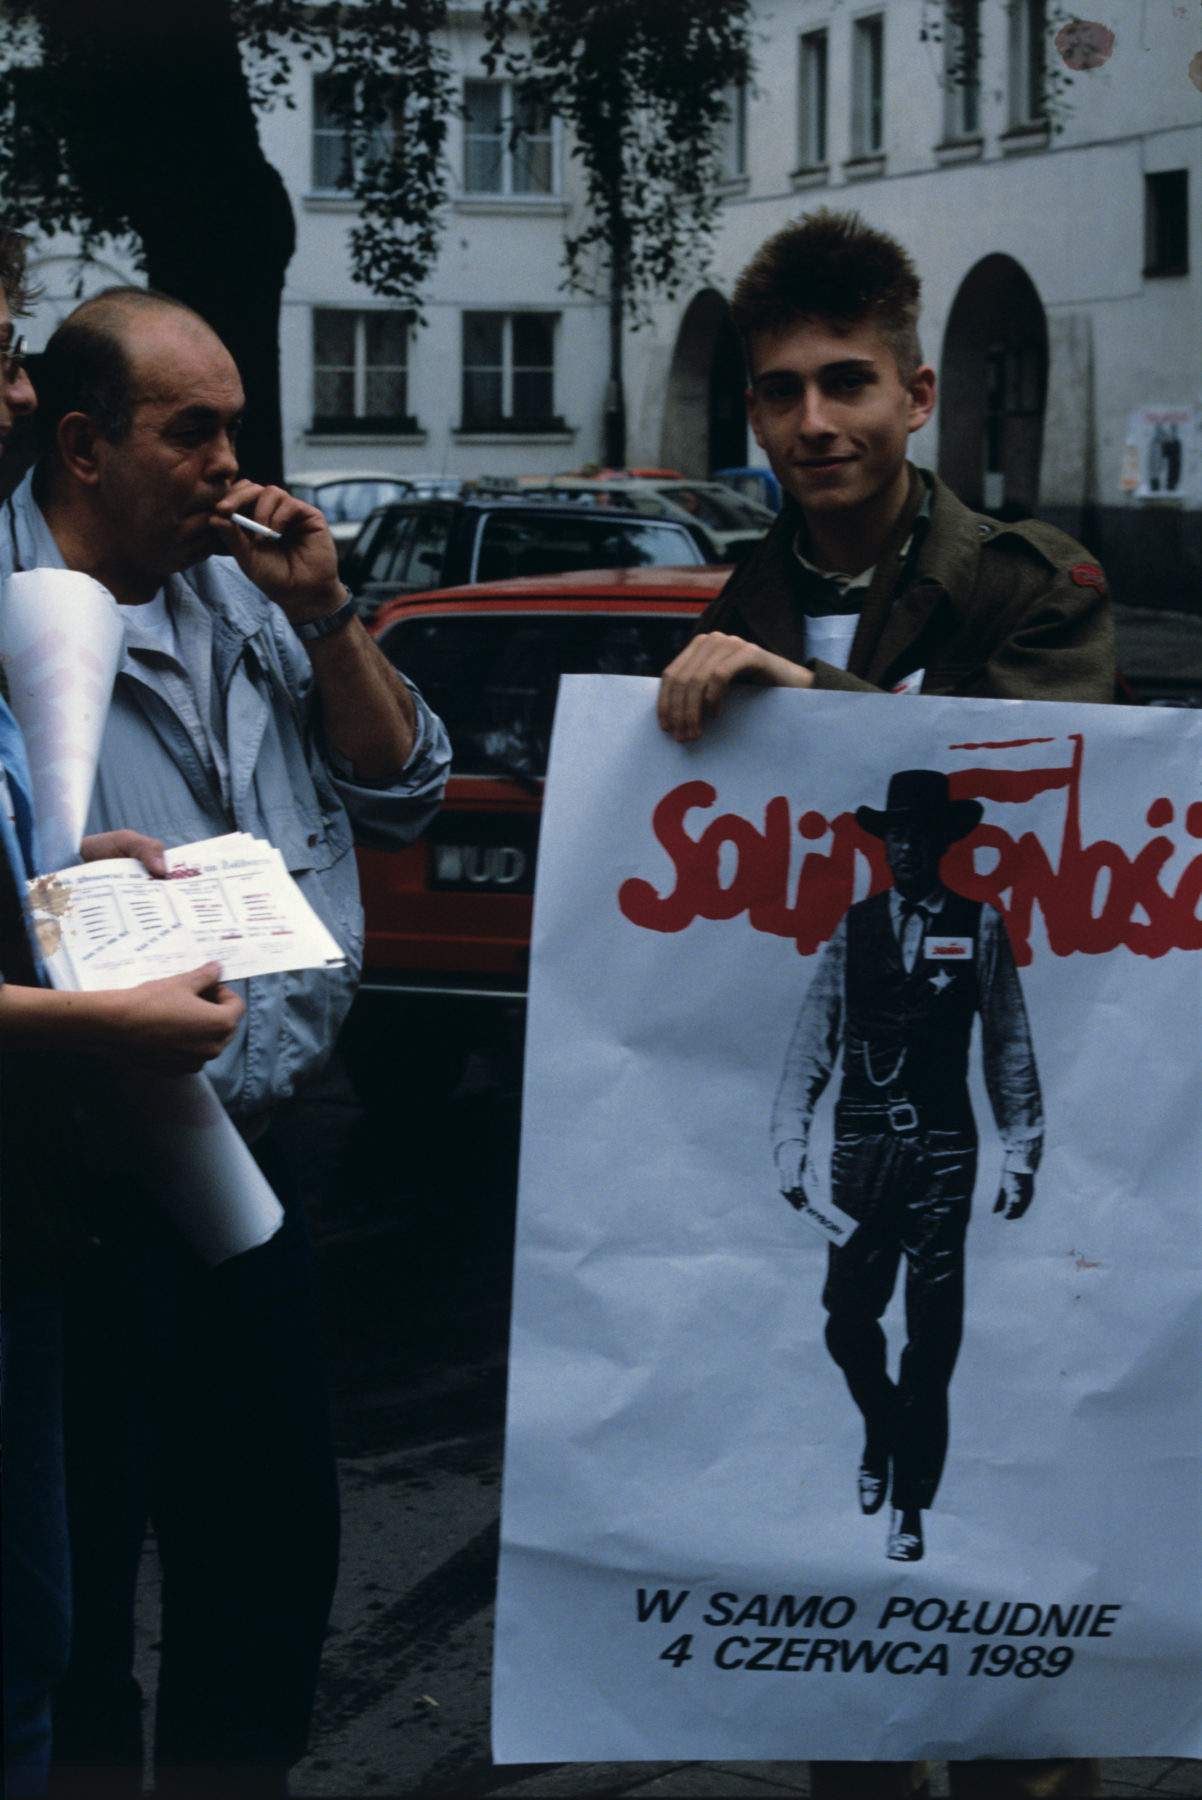 Plakat wyborczy Solidarnoci: W samo po³udnie 4 czerwca 1989